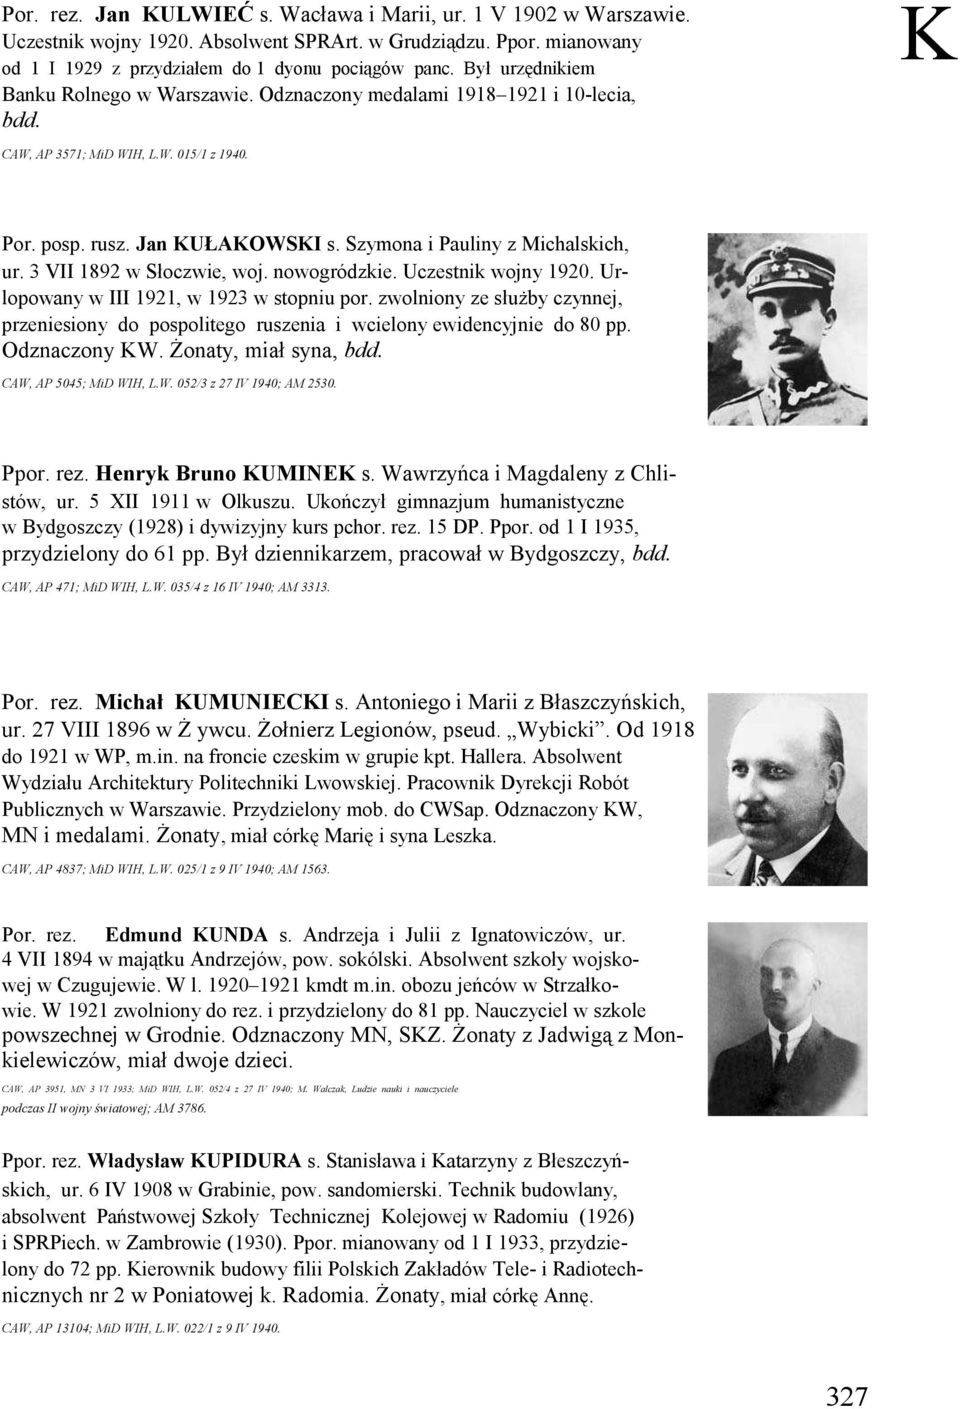 Szymona i Pauliny z Michalskich, ur. 3 VII 1892 w Słoczwie, woj. nowogródzkie. Uczestnik wojny 1920. Urlopowany w III 1921, w 1923 w stopniu por.